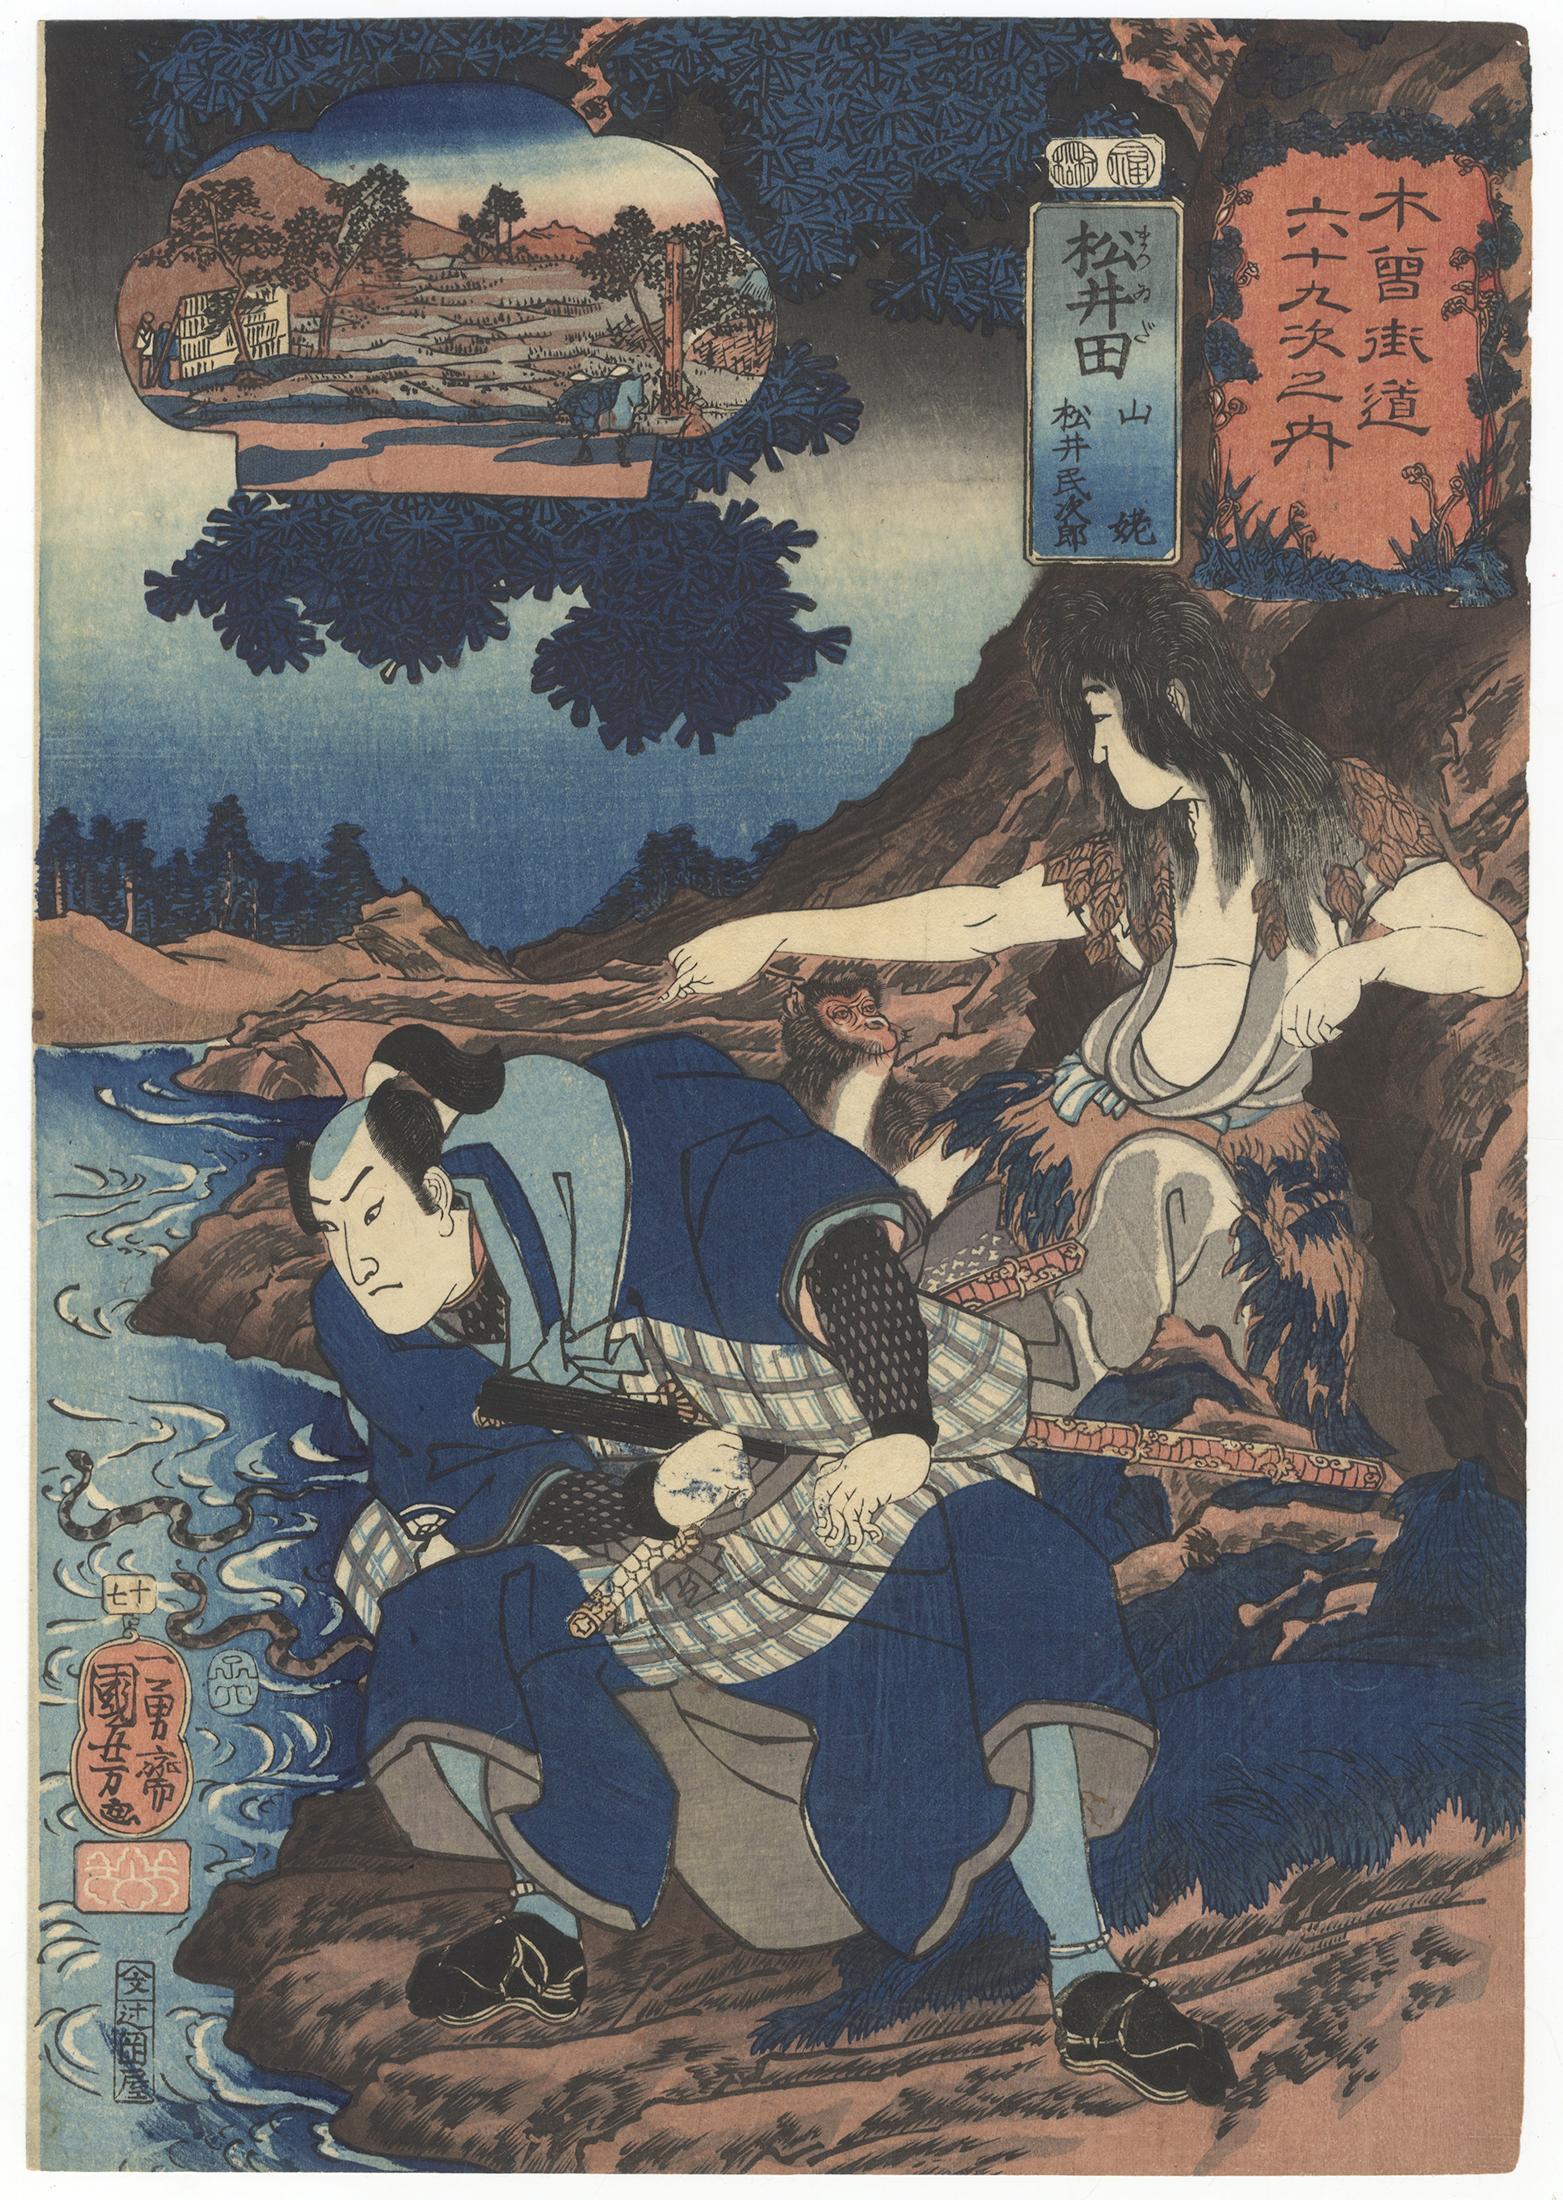 Utagawa Kuniyoshi Portrait Print - Kuniyoshi, Original Japanese Woodblock Print, Samurai, Edo, Ukiyo-e, Kiso Kaidō